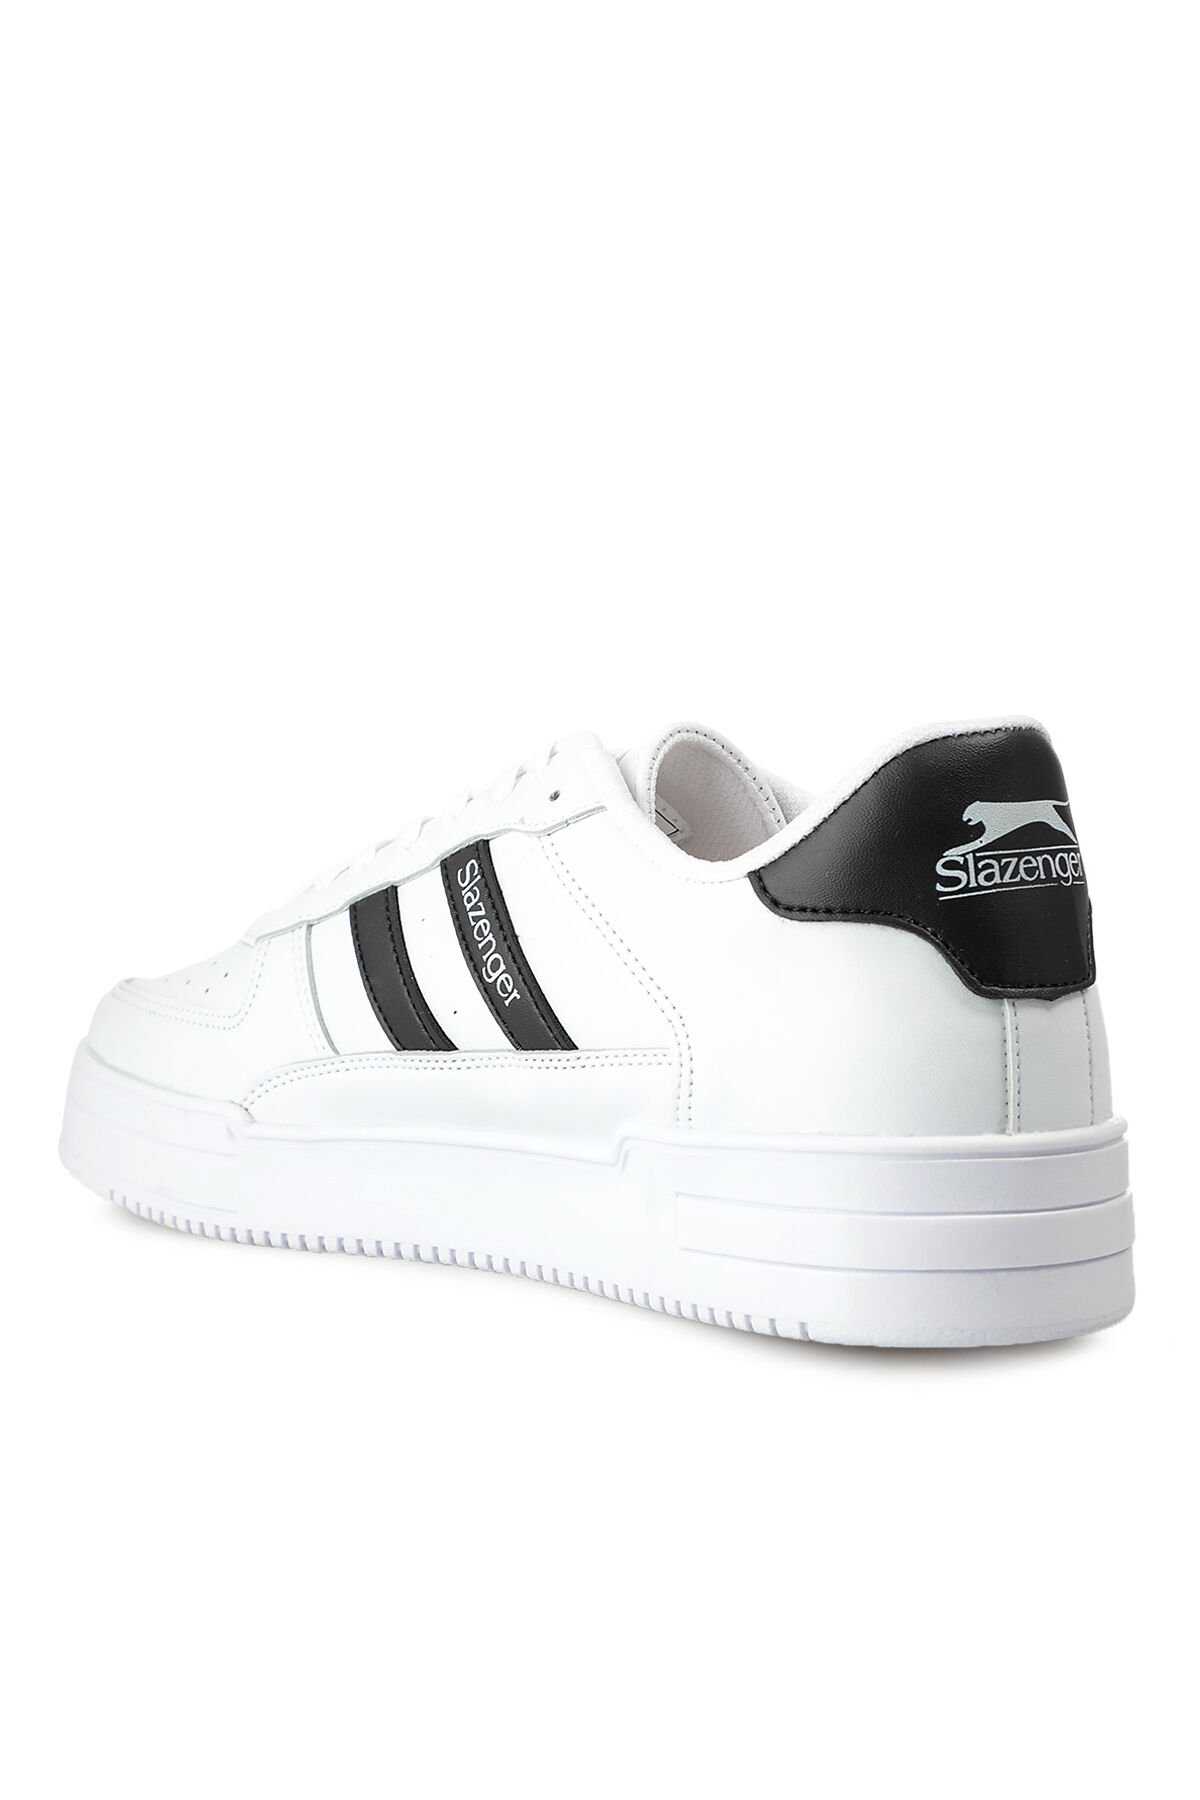 CAMP IN Sneaker Kadın Ayakkabı Beyaz / Siyah - Thumbnail